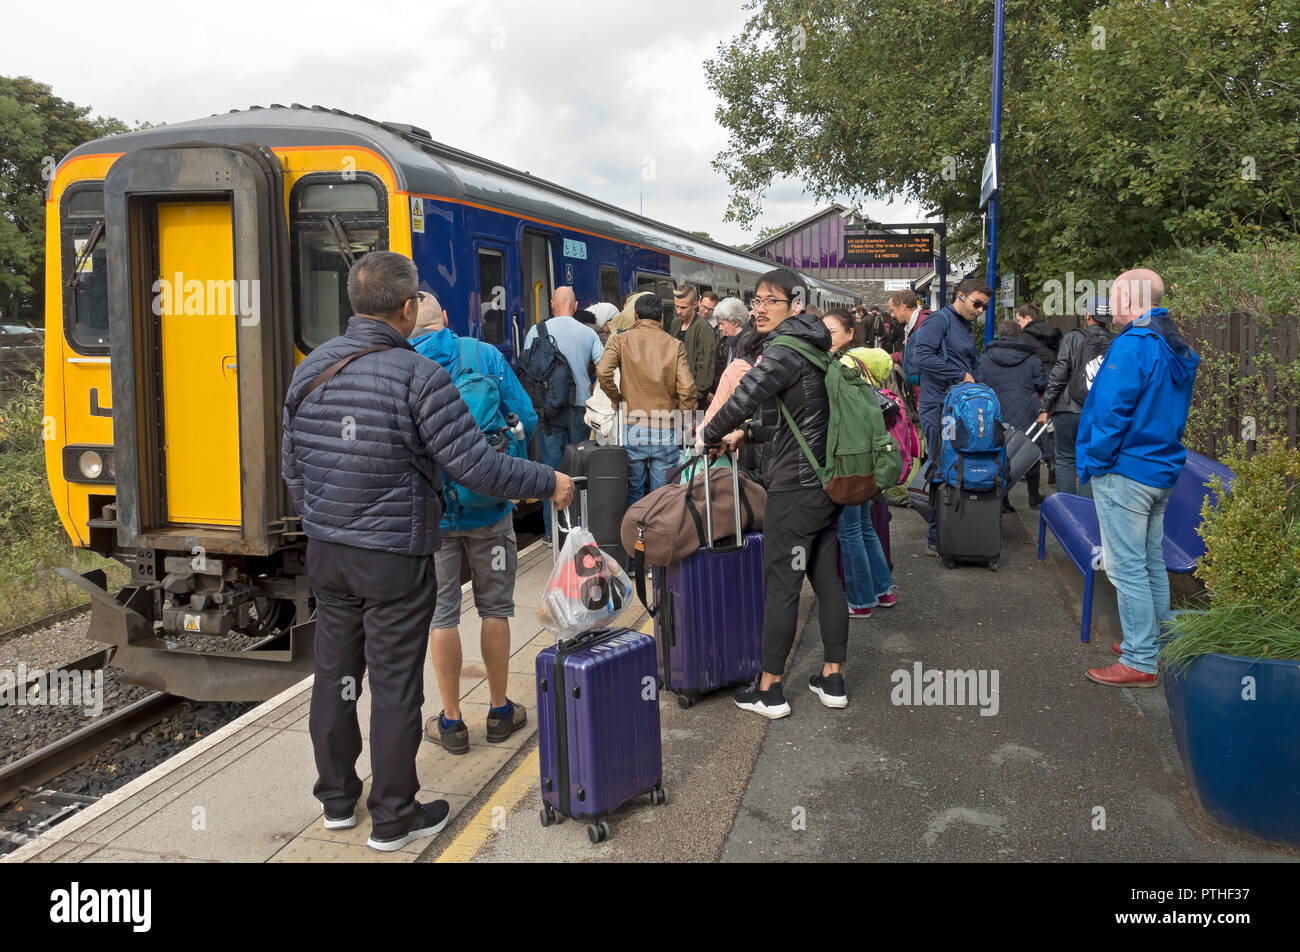 Passagiere Menschen Touristen Einsteigen in den Northern Train am Bahnhof Windermere Cumbria England Großbritannien Großbritannien Großbritannien Großbritannien Großbritannien Großbritannien Großbritannien Großbritannien Großbritannien Großbritannien Großbritannien Großbritannien Großbritannien Großbritannien Großbritannien Großbritannien Großbritannien Großbritannien Stockfoto